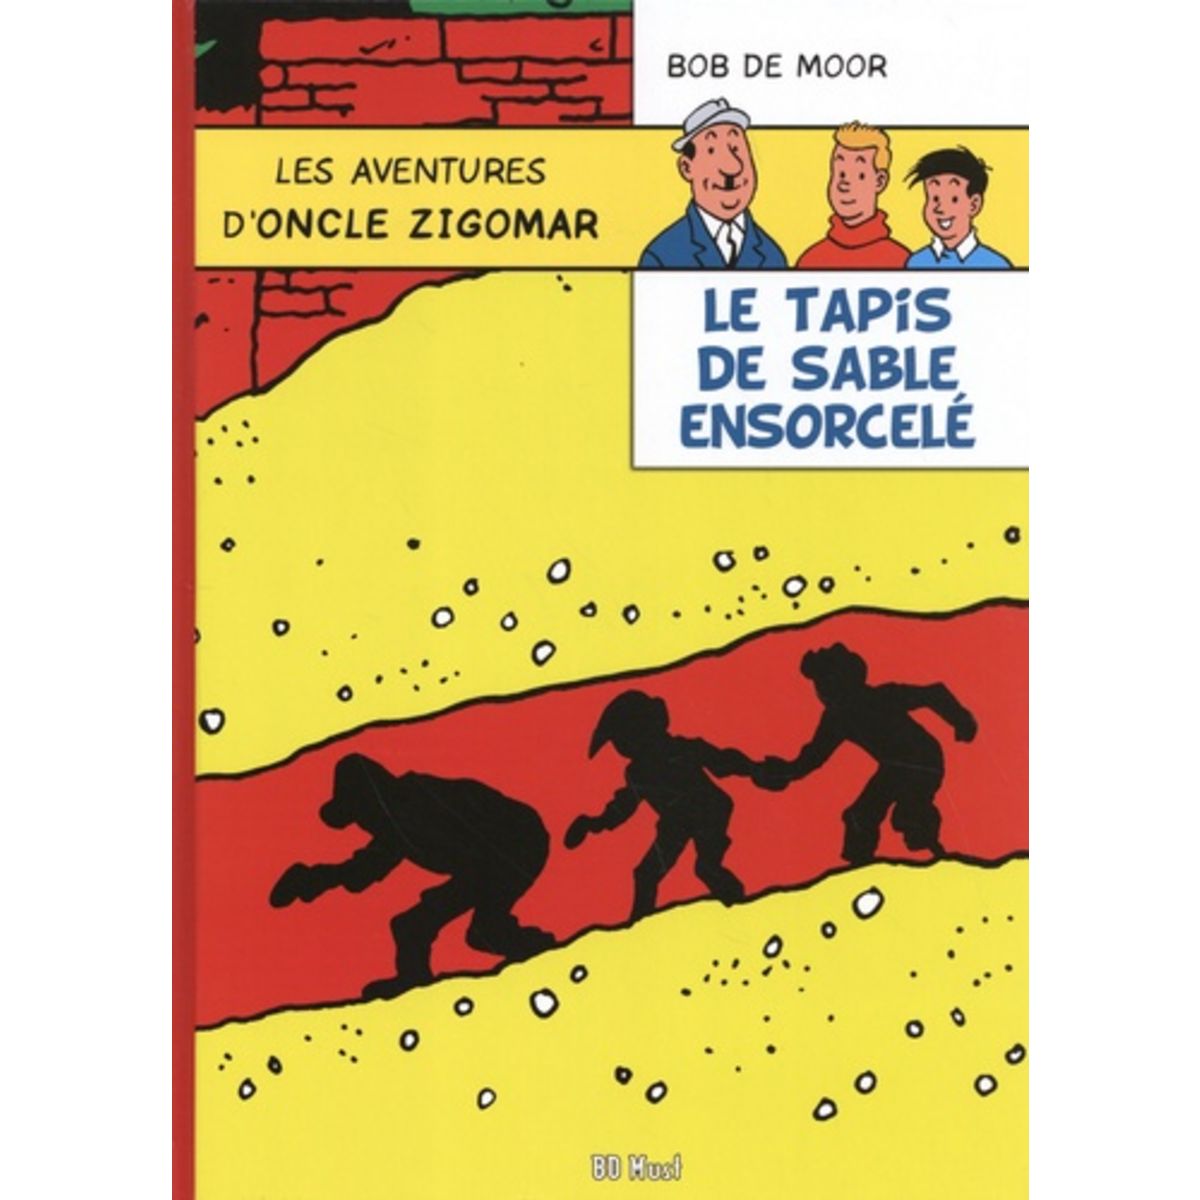  LES AVENTURES D'ONCLE ZIGOMAR TOME 4 : LE TAPIS DE SABLE ENSORCELE, De Moor Bob